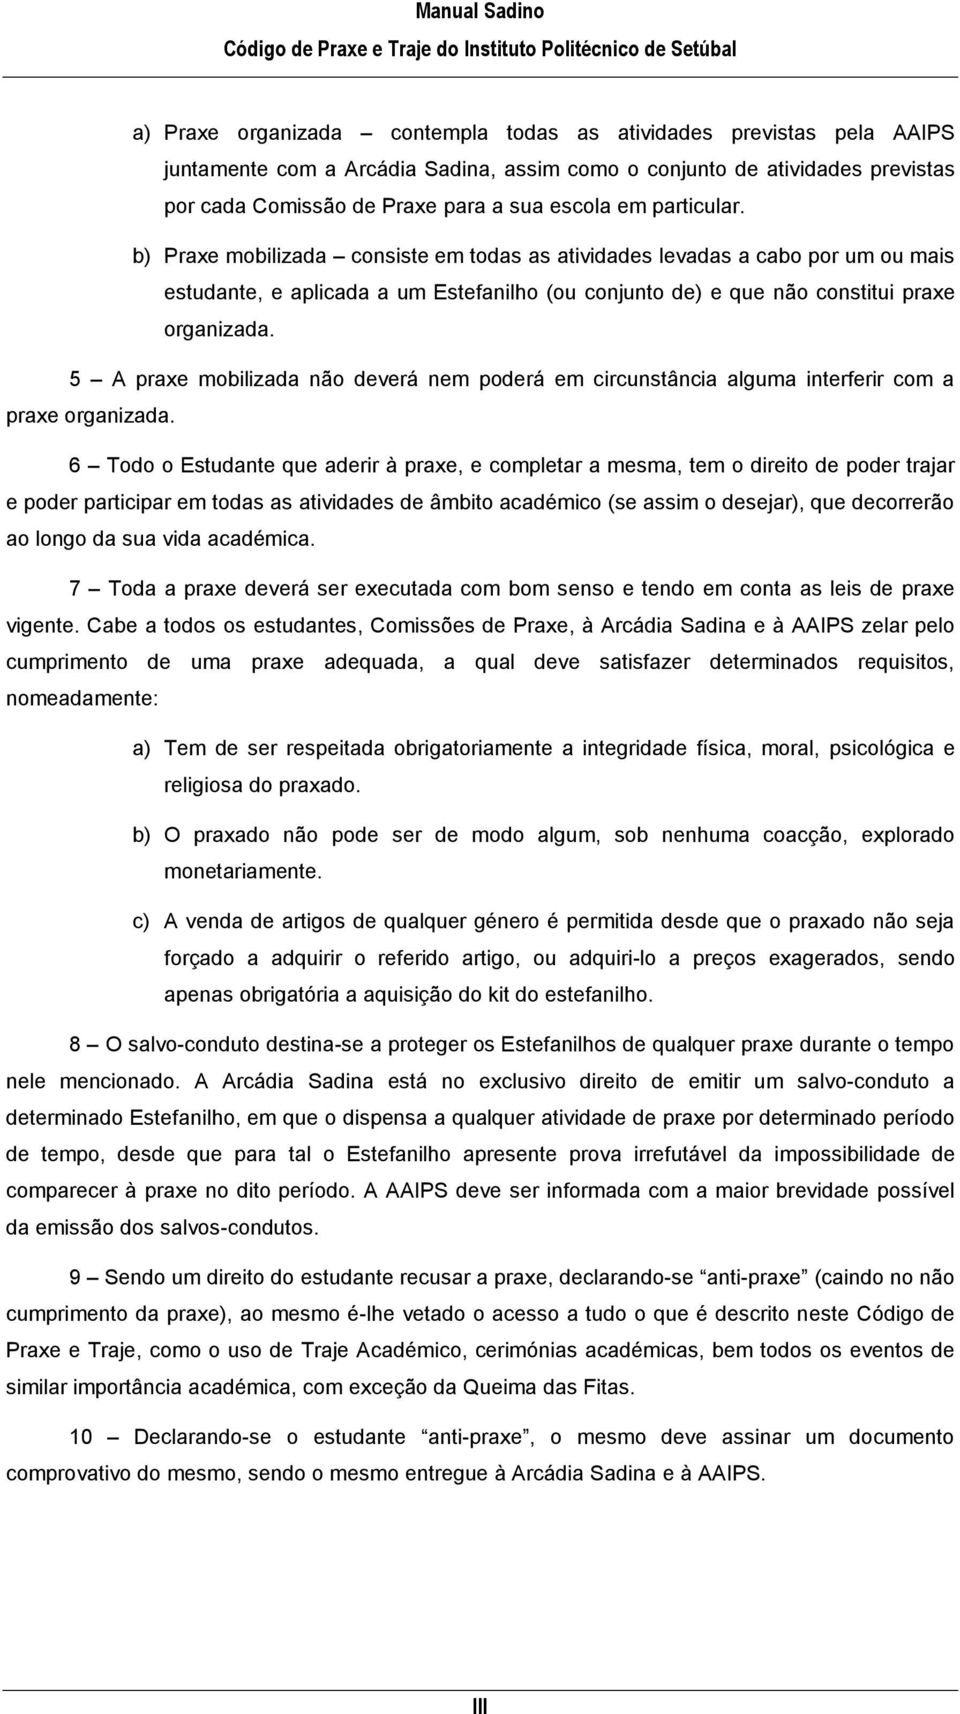 Manual Sadino. Código de Praxe e Traje. Do Instituto Politécnico de Setúbal  - PDF Free Download